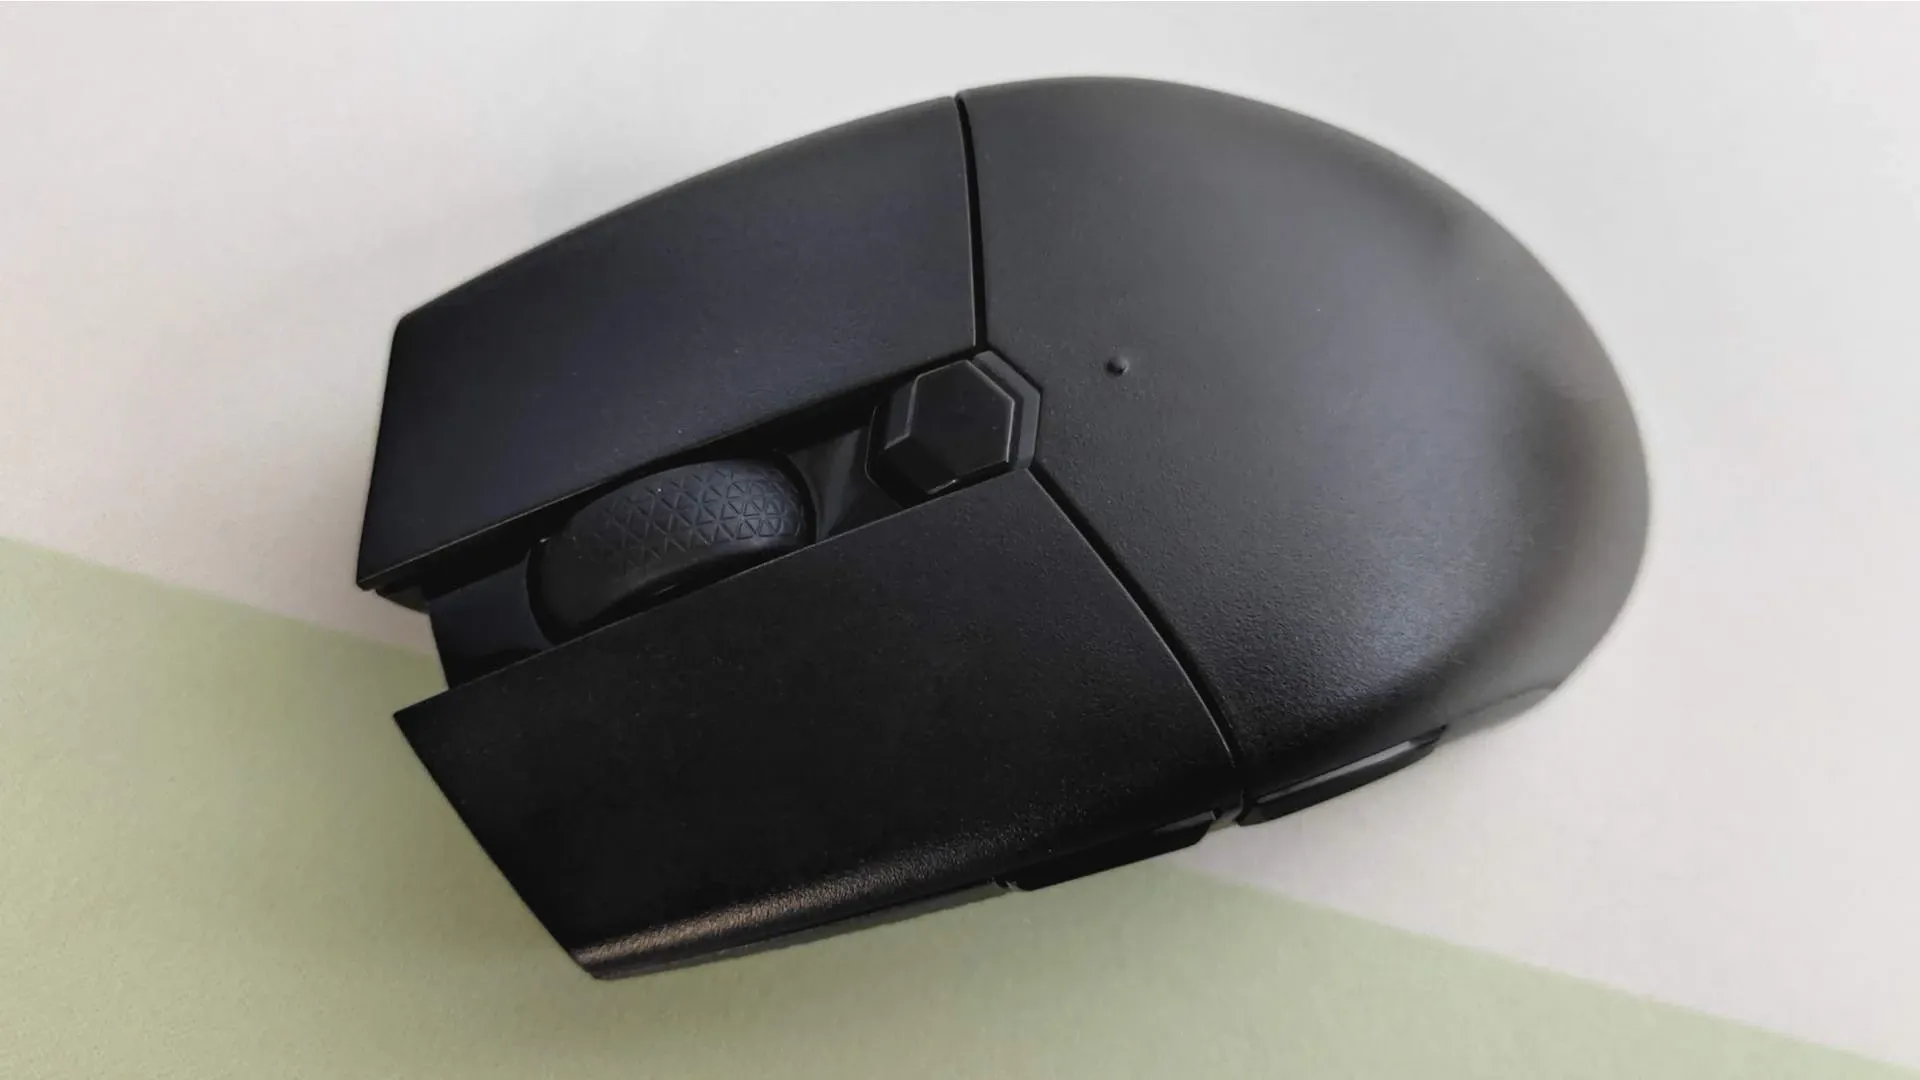 Mouse gamer preto com formato "claw" sobre mesa branca